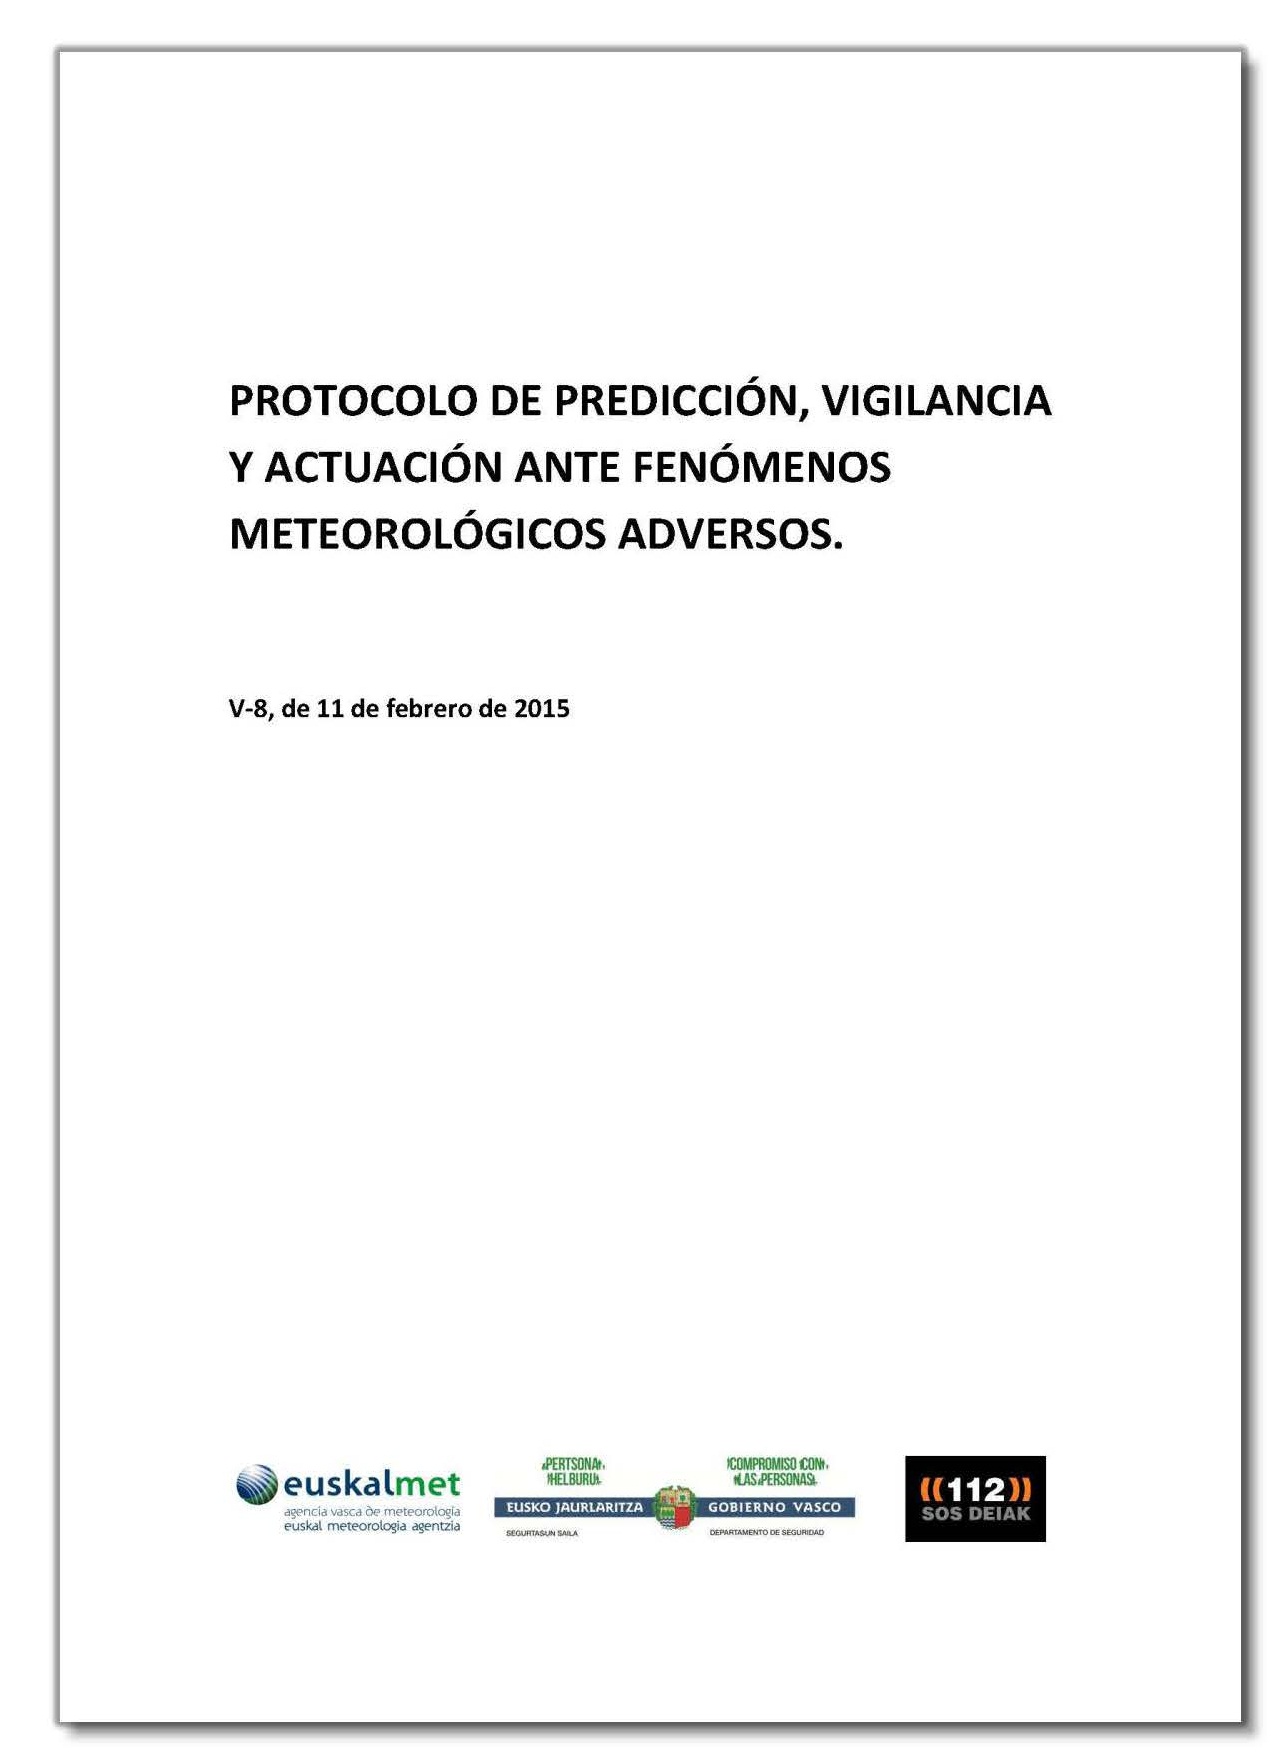 Protocolo de predicción, vigilancia y actuación ante fenómenos meteorológicos adversos